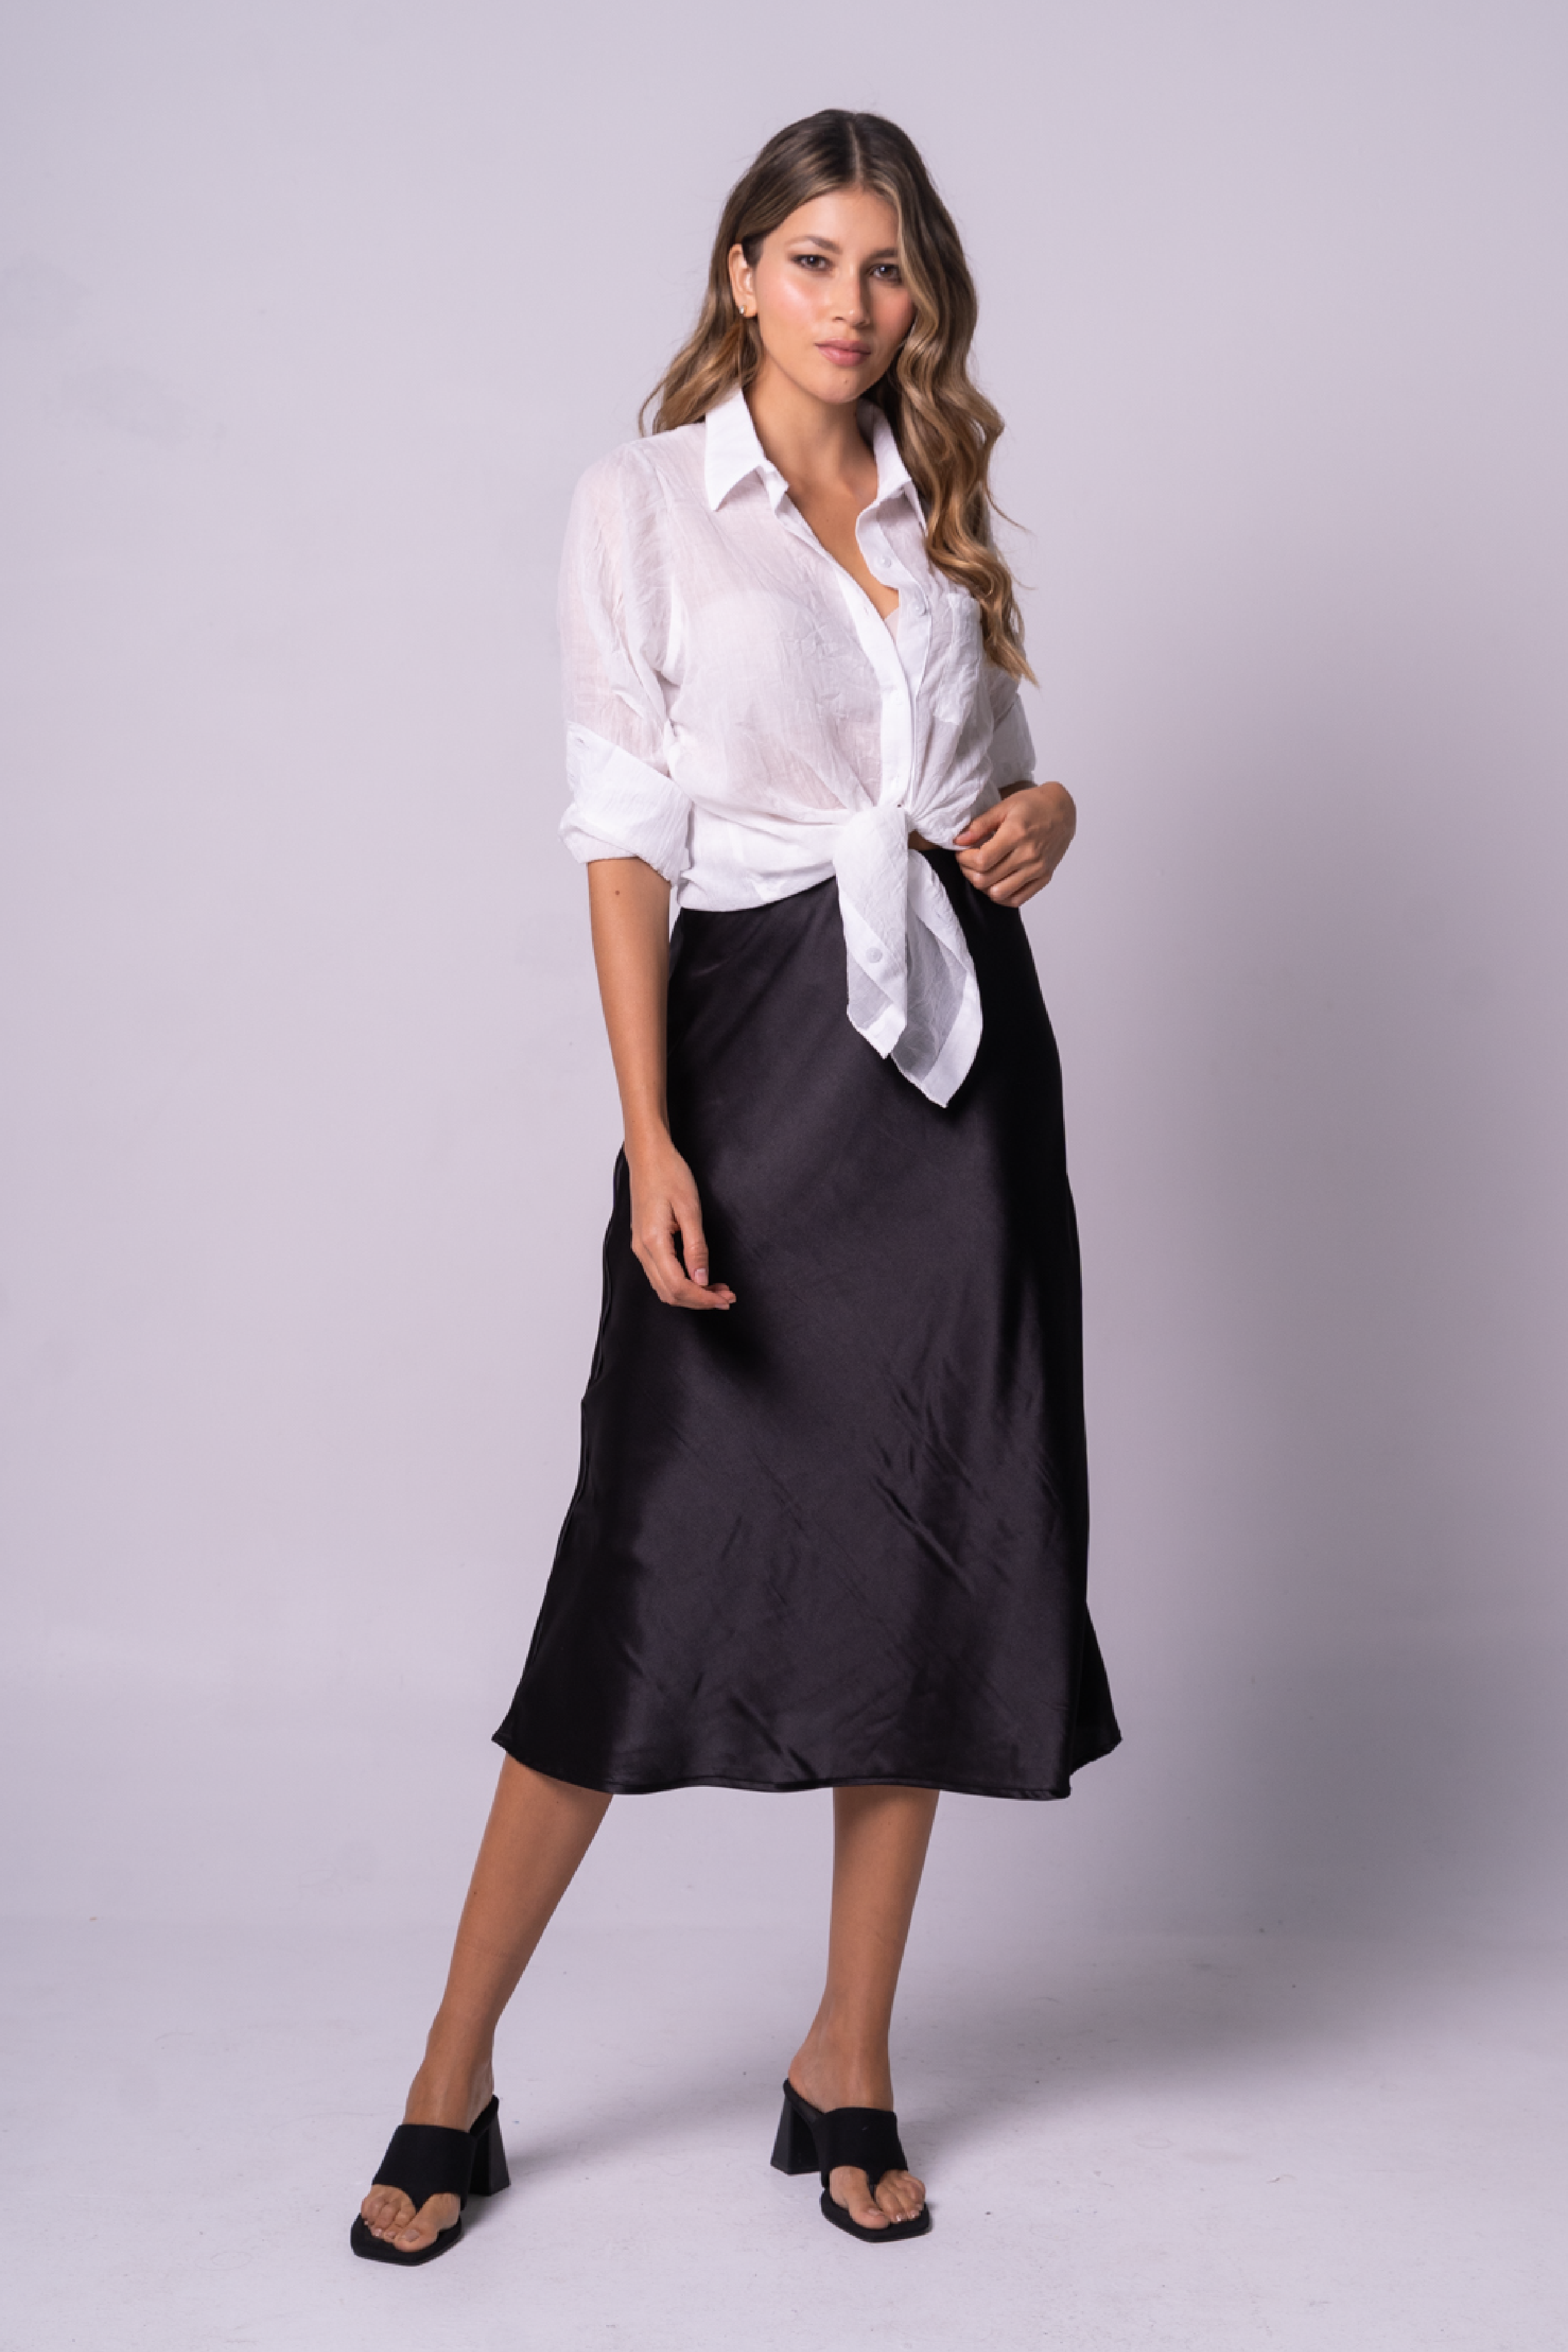 Falda mini satinada de color negro con blusa blanca